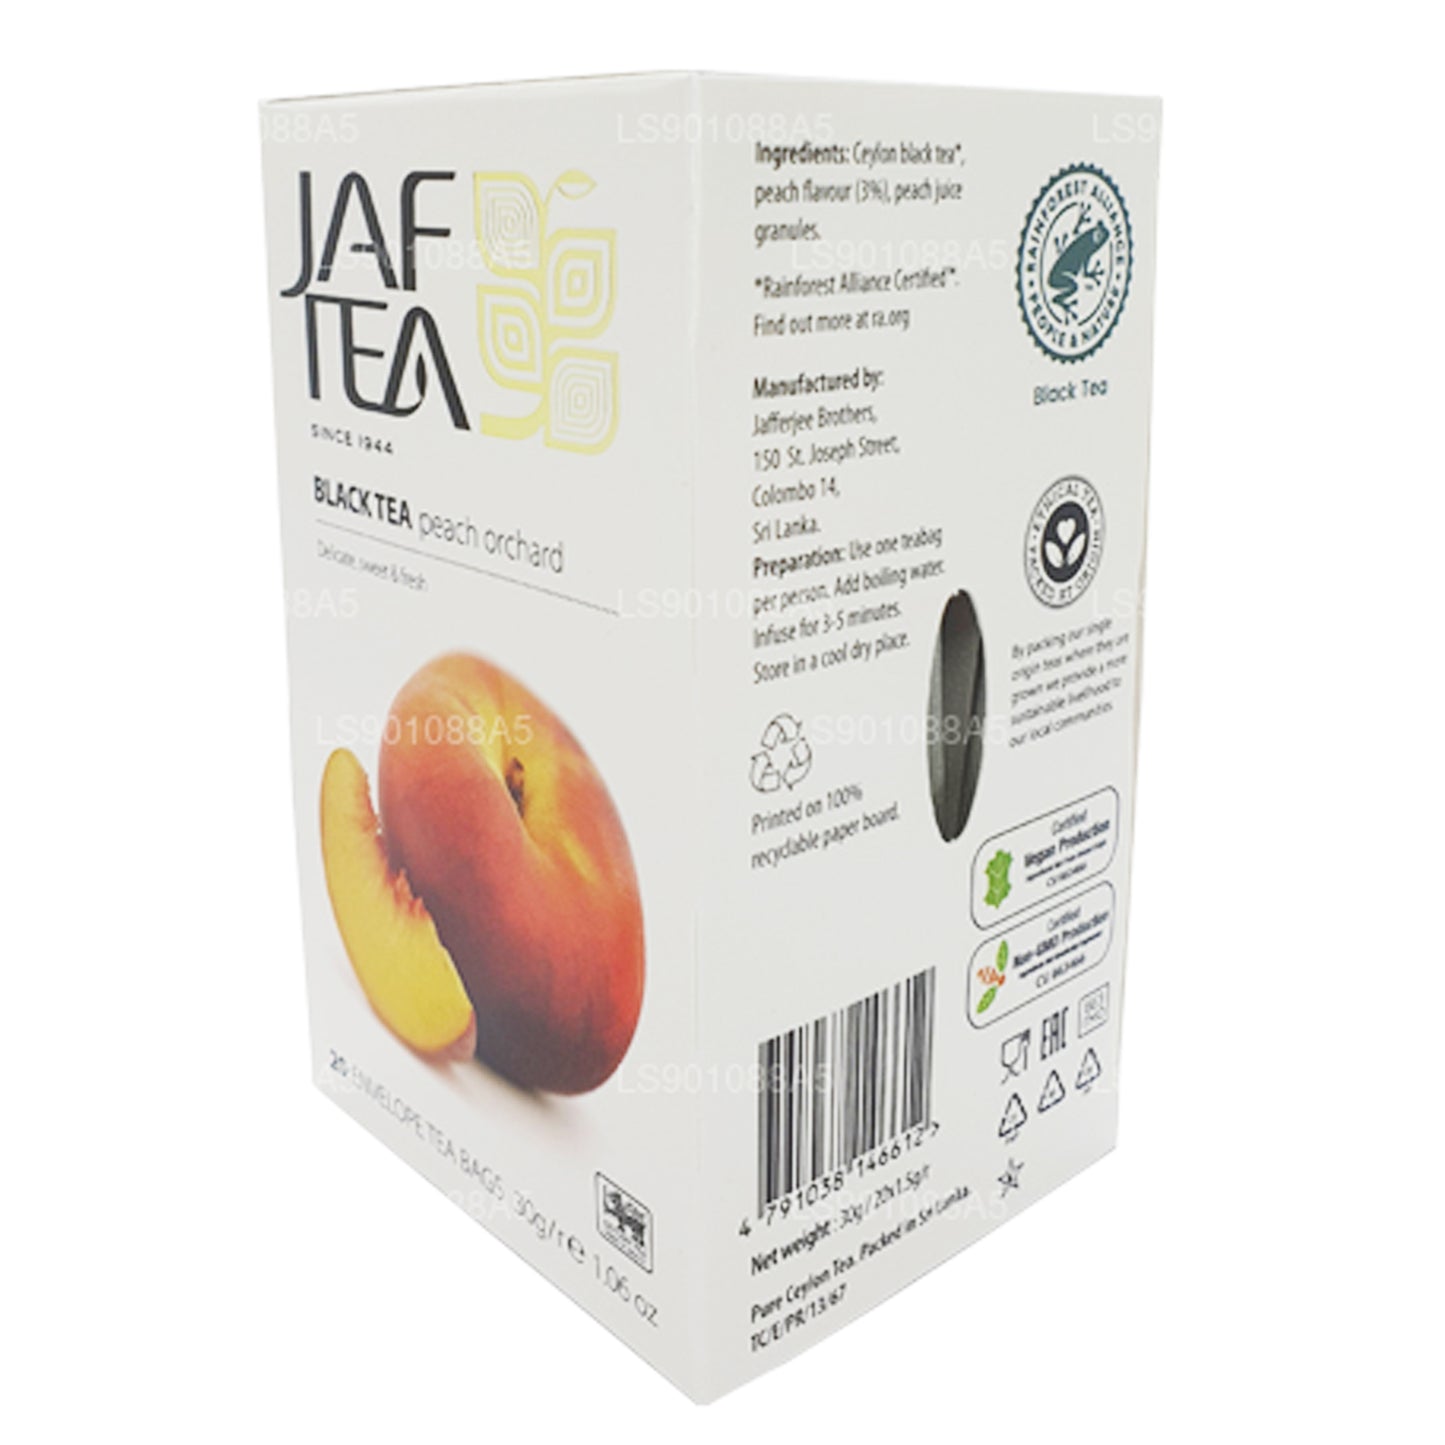 Jaf Tea Peach Orchard Black Tea (30g)